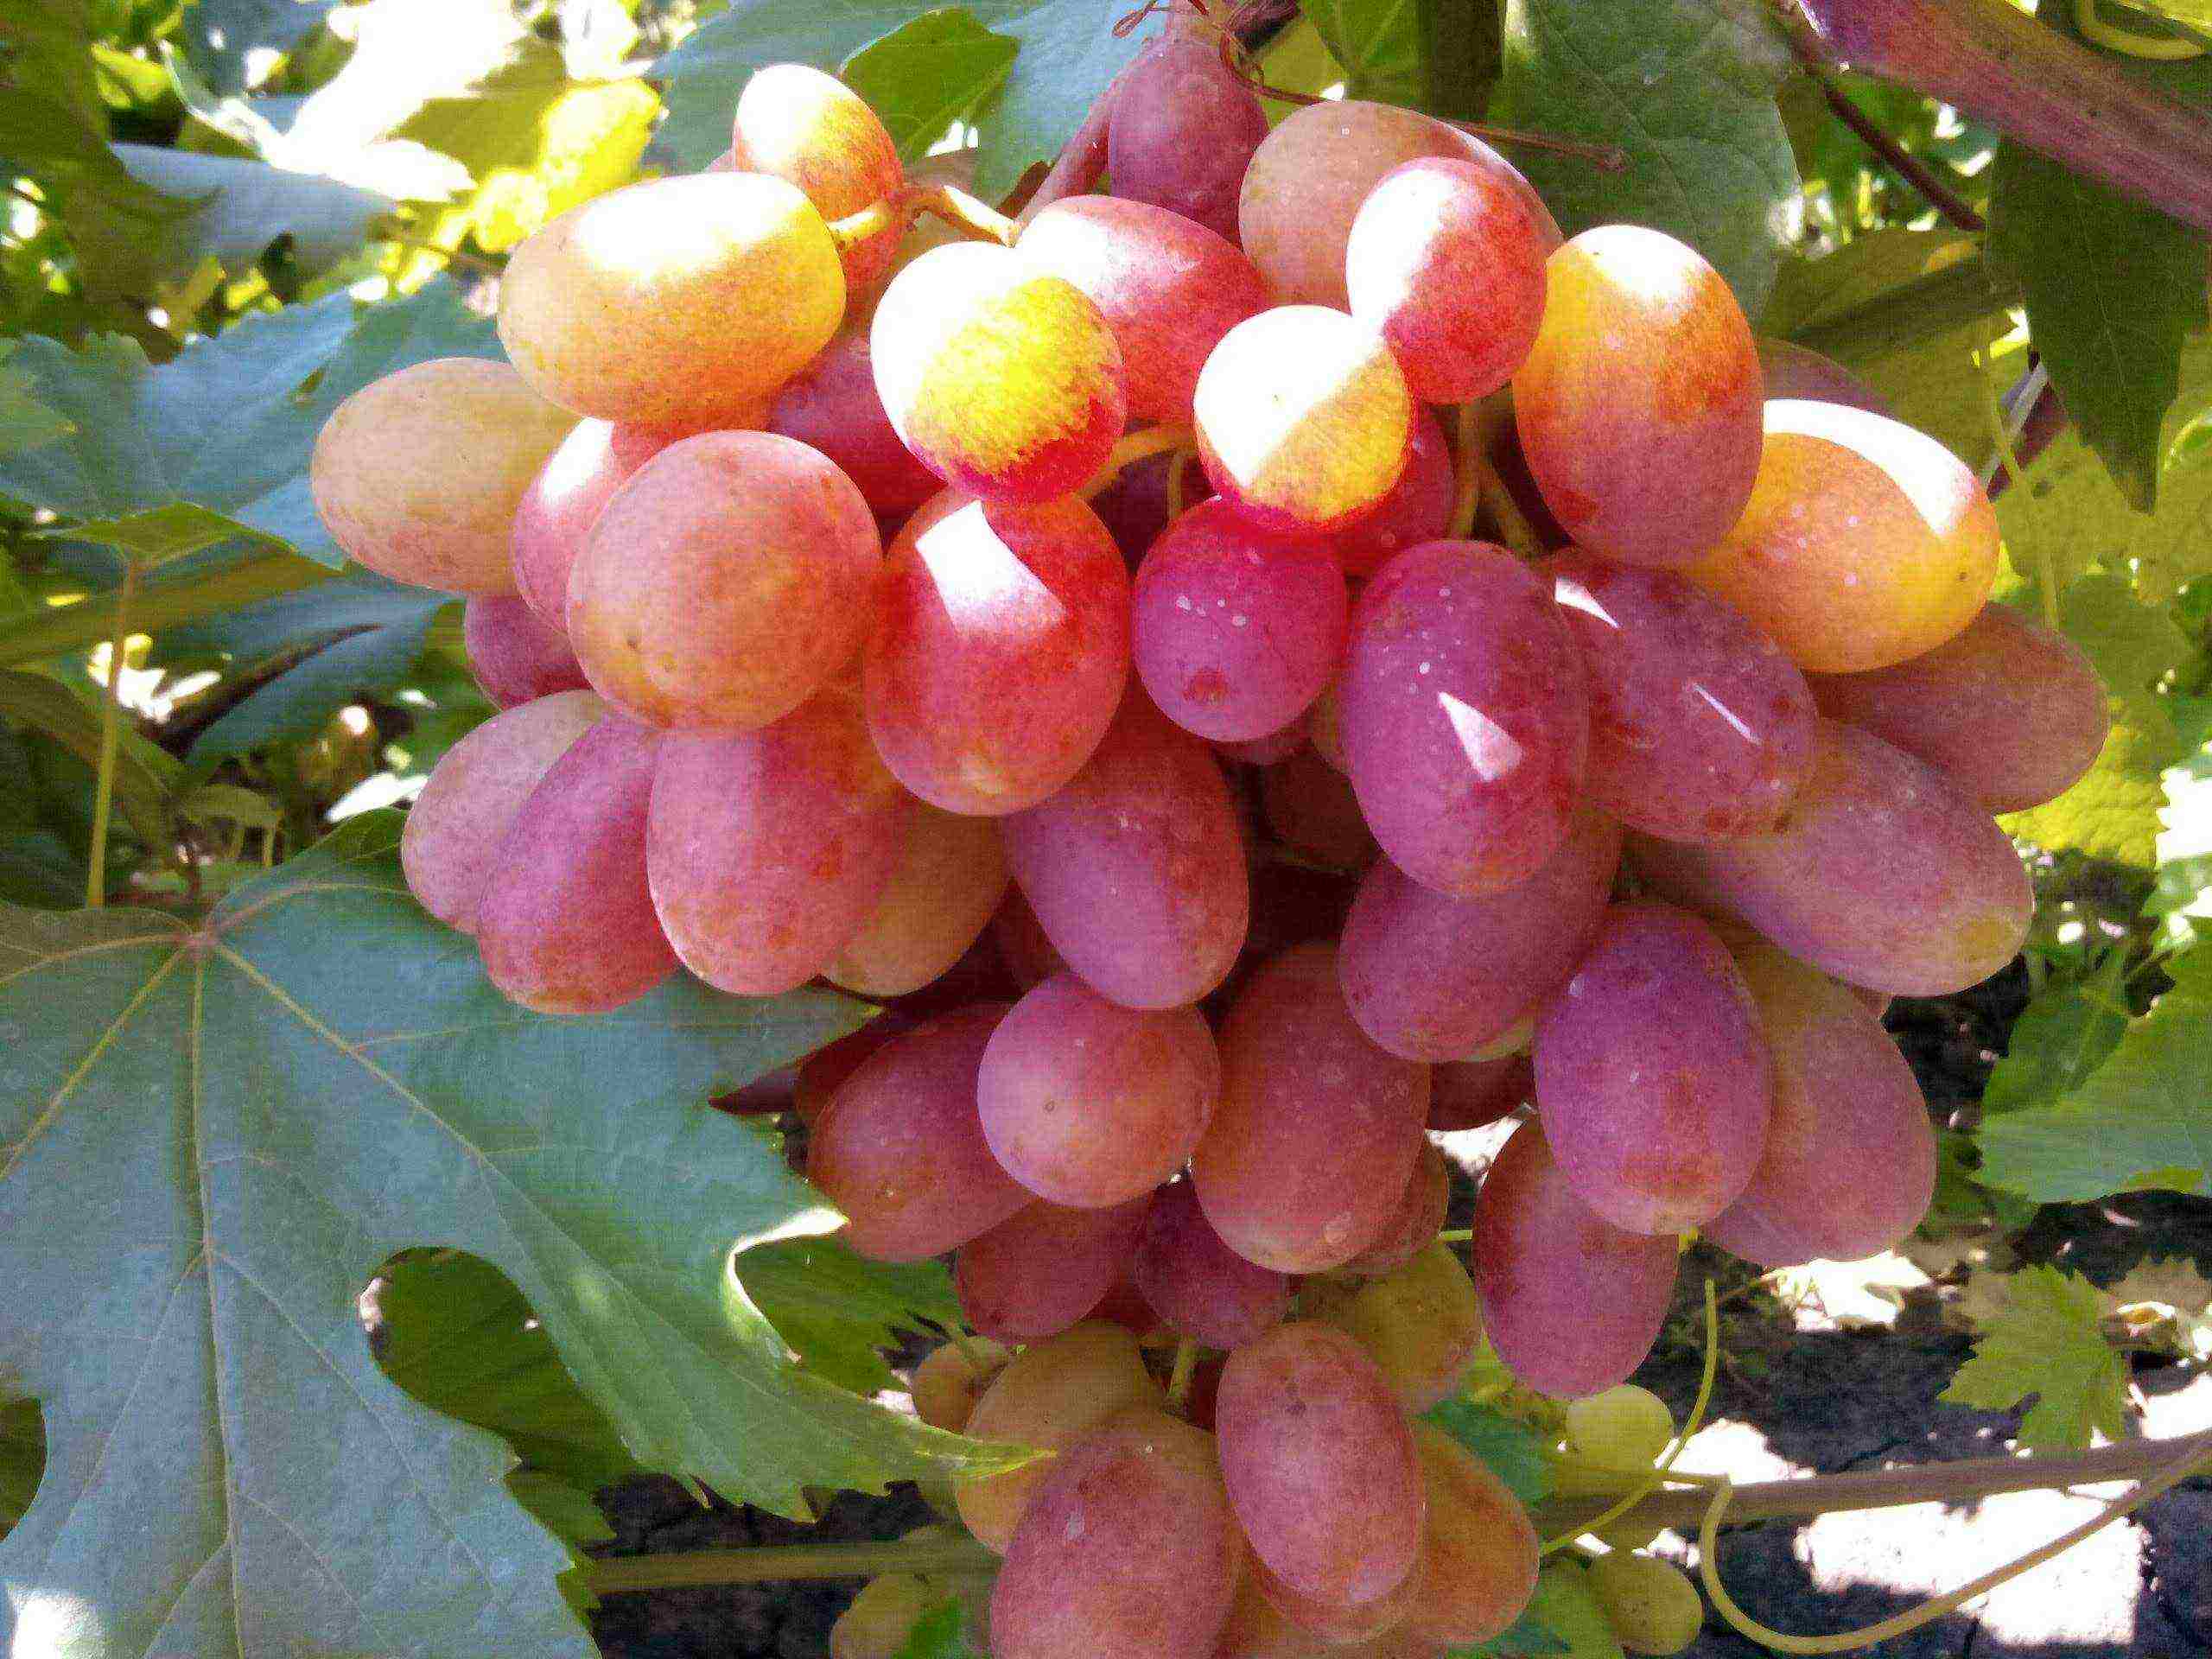 the best industrial grape varieties